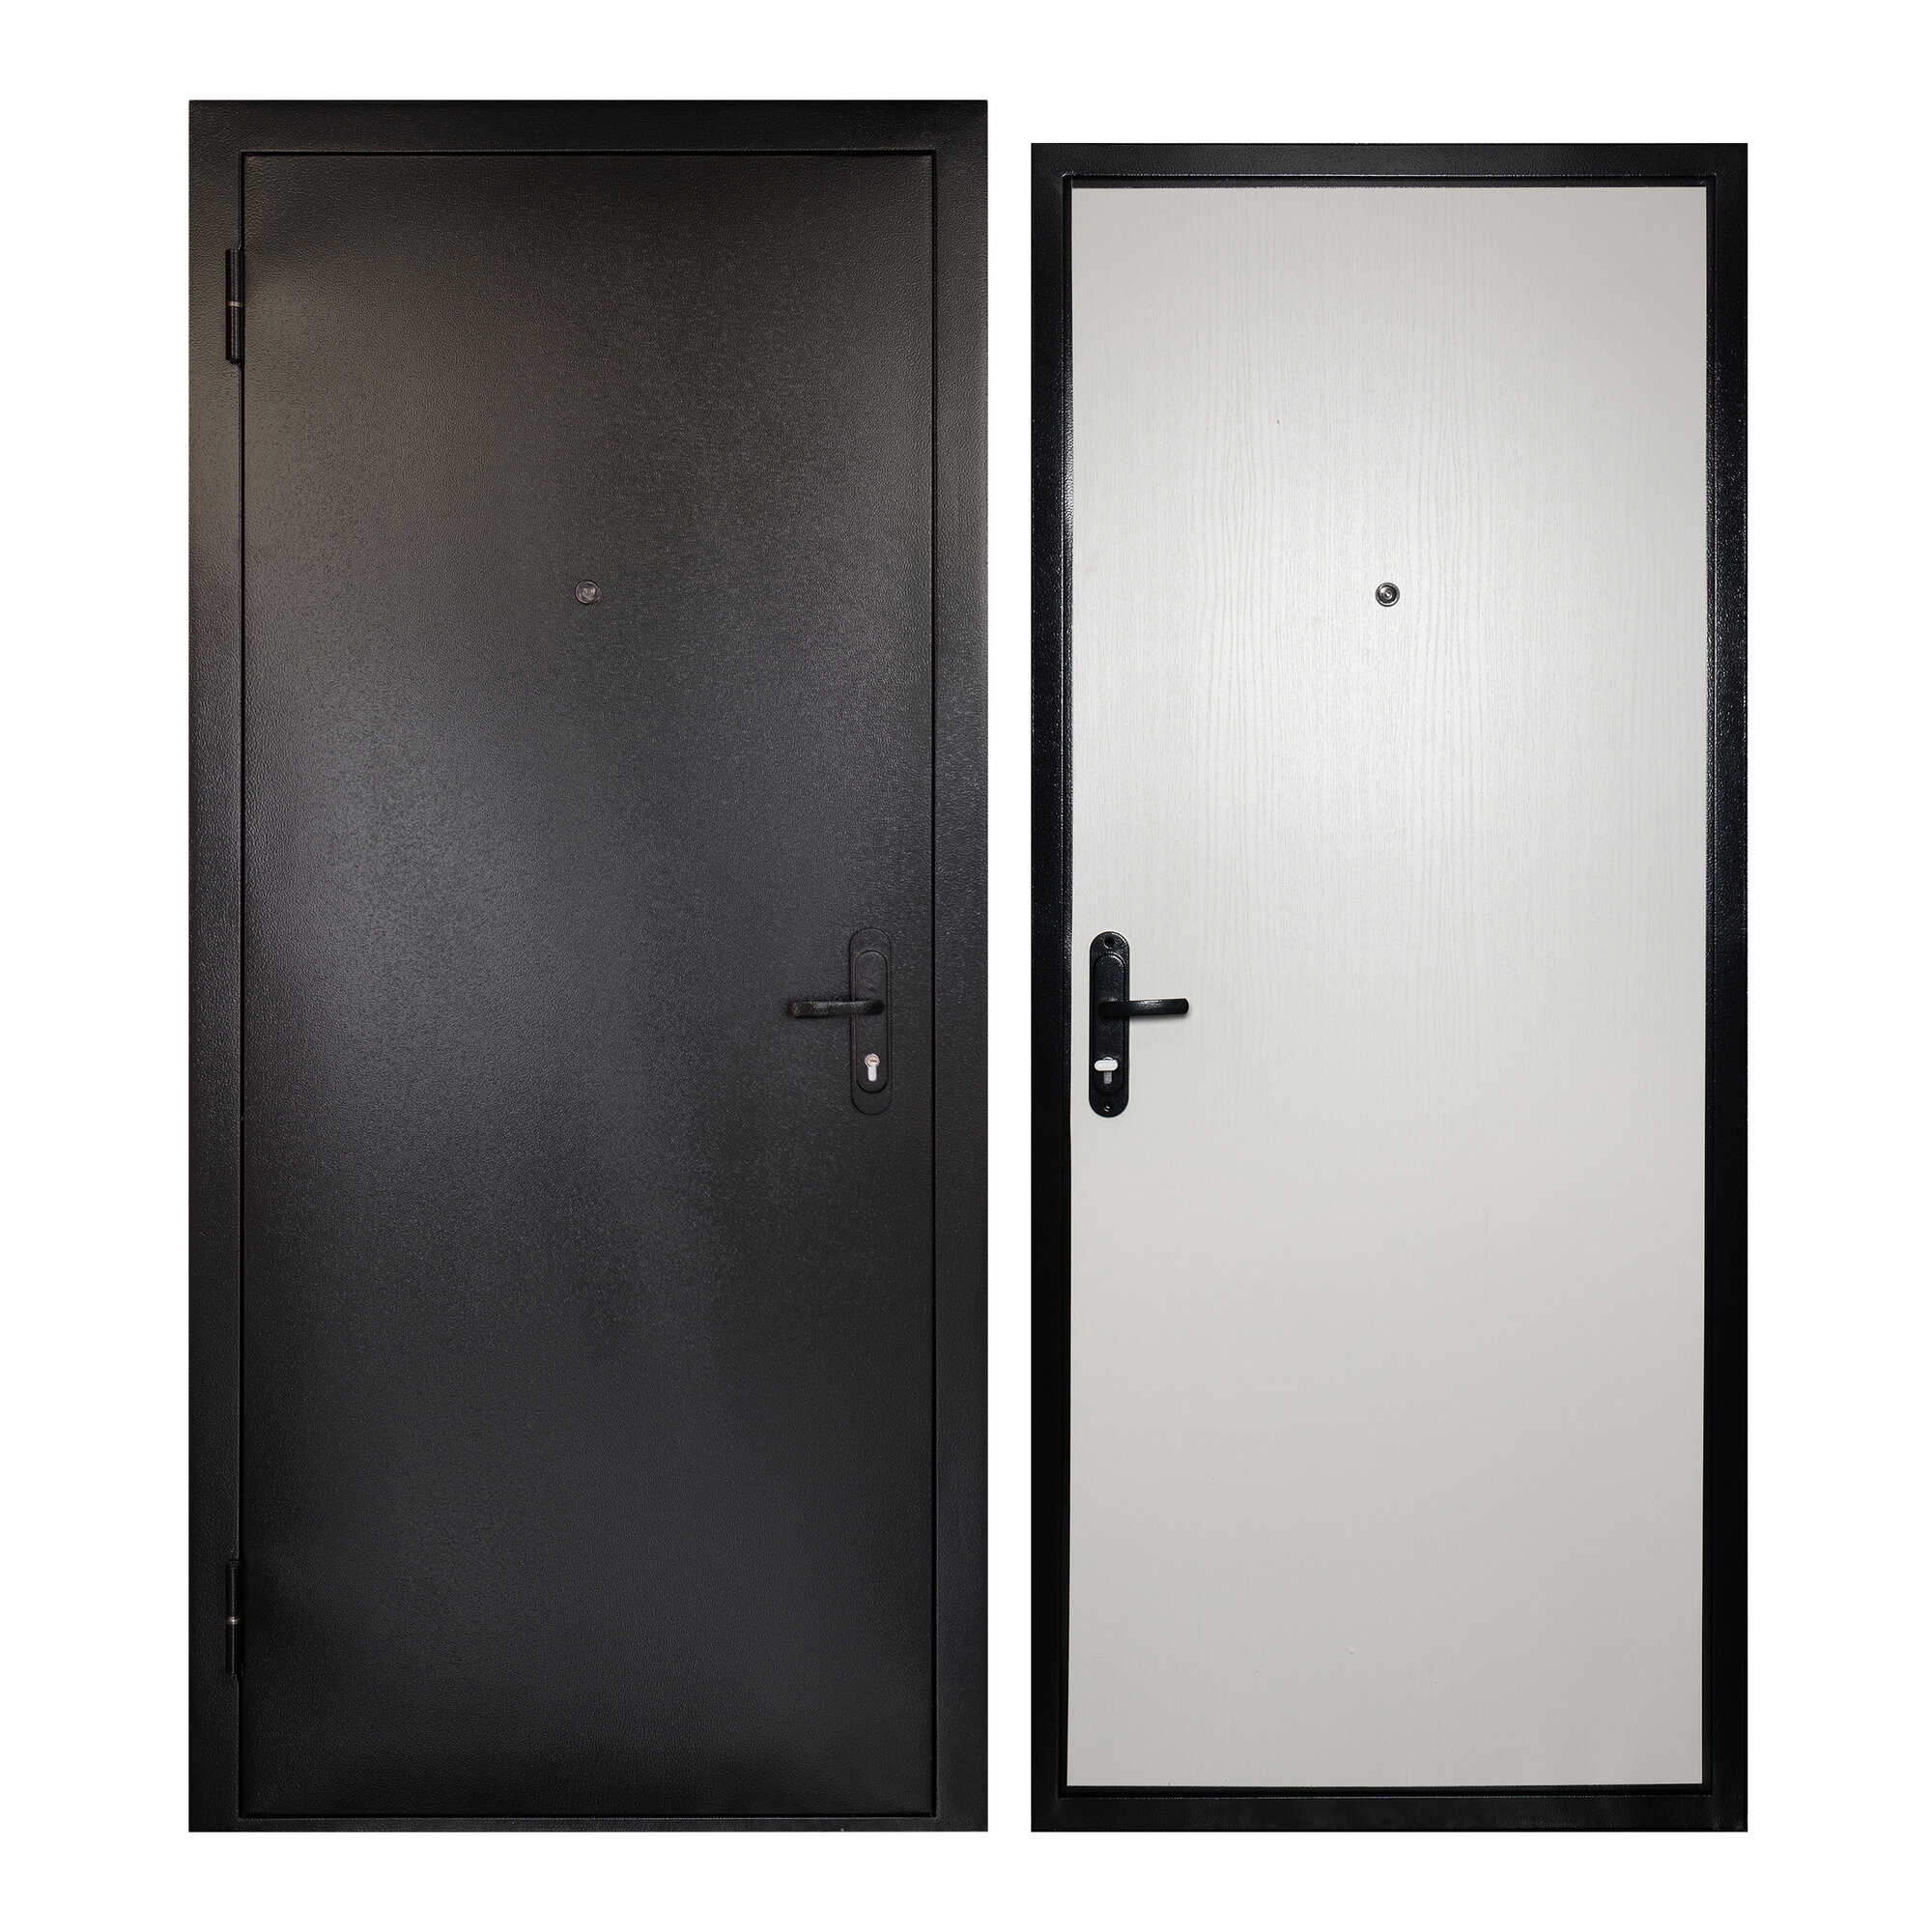 Дверь входная для квартиры Unicorn металлическая Terminal 960х2050, левая, антивандальное покрытие, уплотнитель, цилиндровый замок, серый/белый